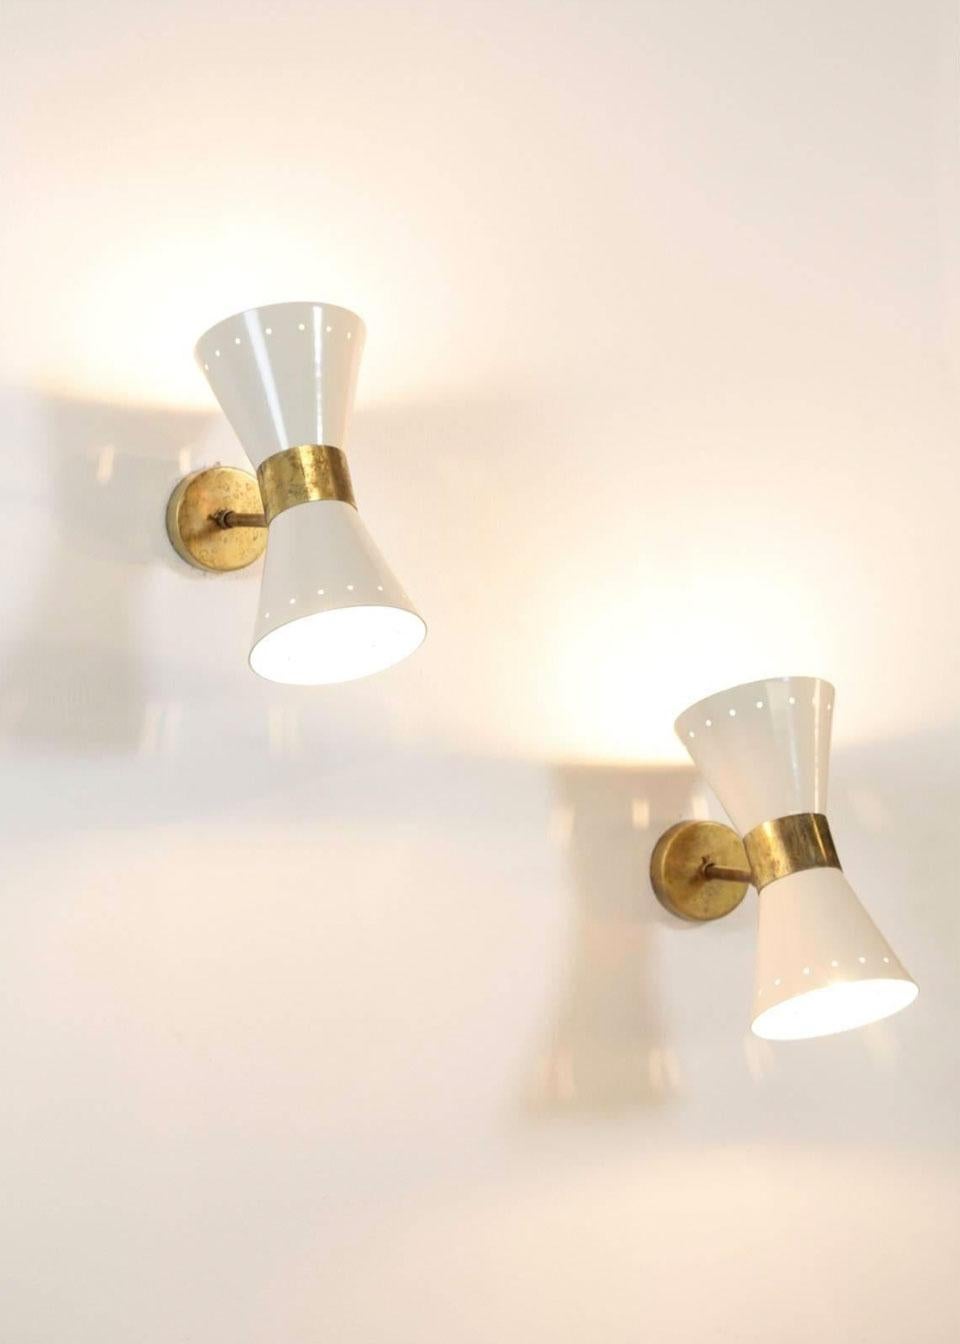 1 of 6 Italian Modern Design Wall Light Sconces Stilnovo Style Ivory White Brass For Sale 2